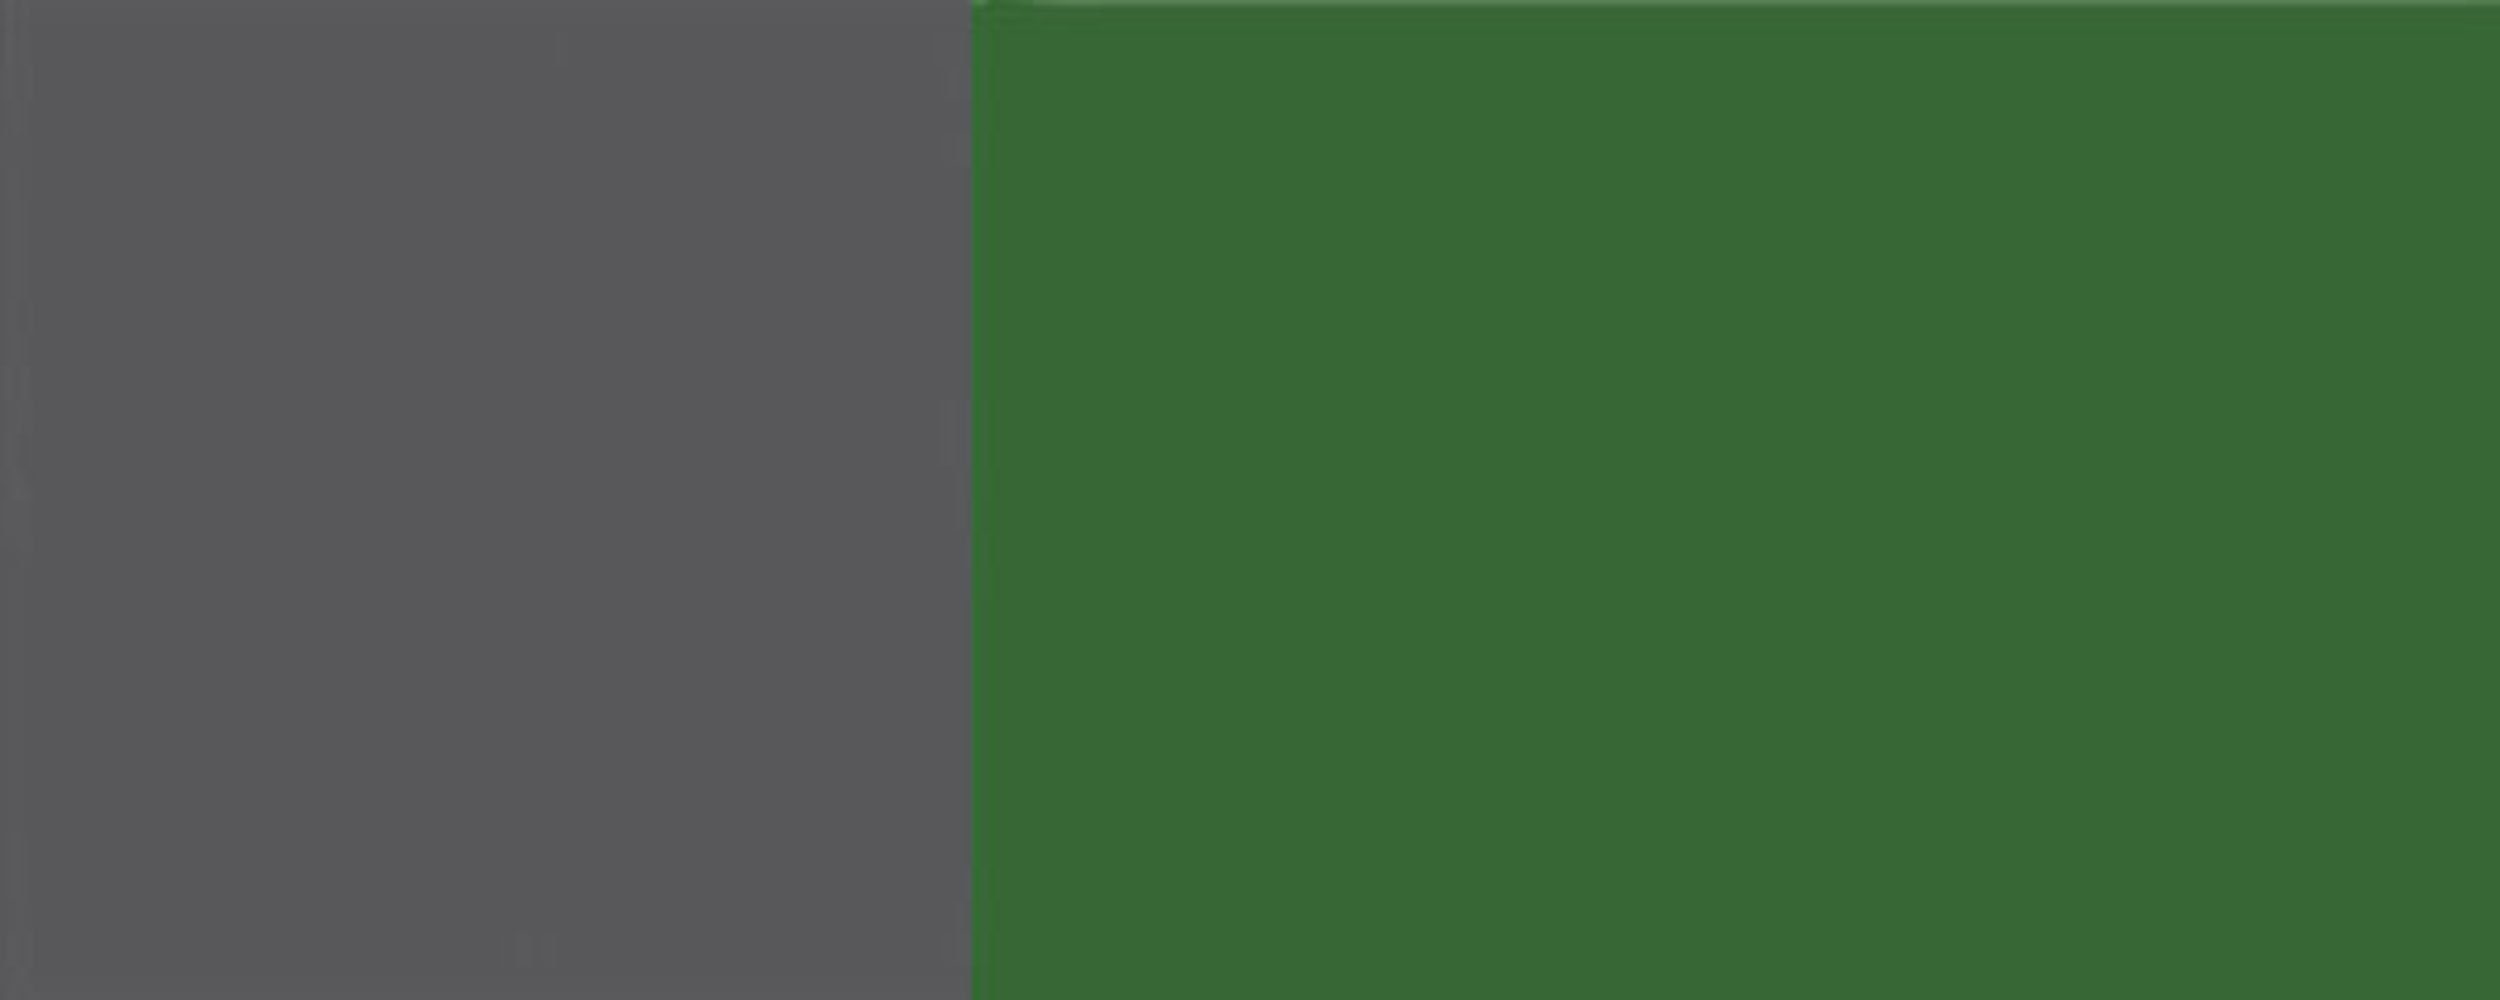 grifflos smaragdgrün Front-, Hochglanz RAL 6001 vollintegriert wählbar und Korpusfarbe Feldmann-Wohnen Sockelblende Florence, Breite